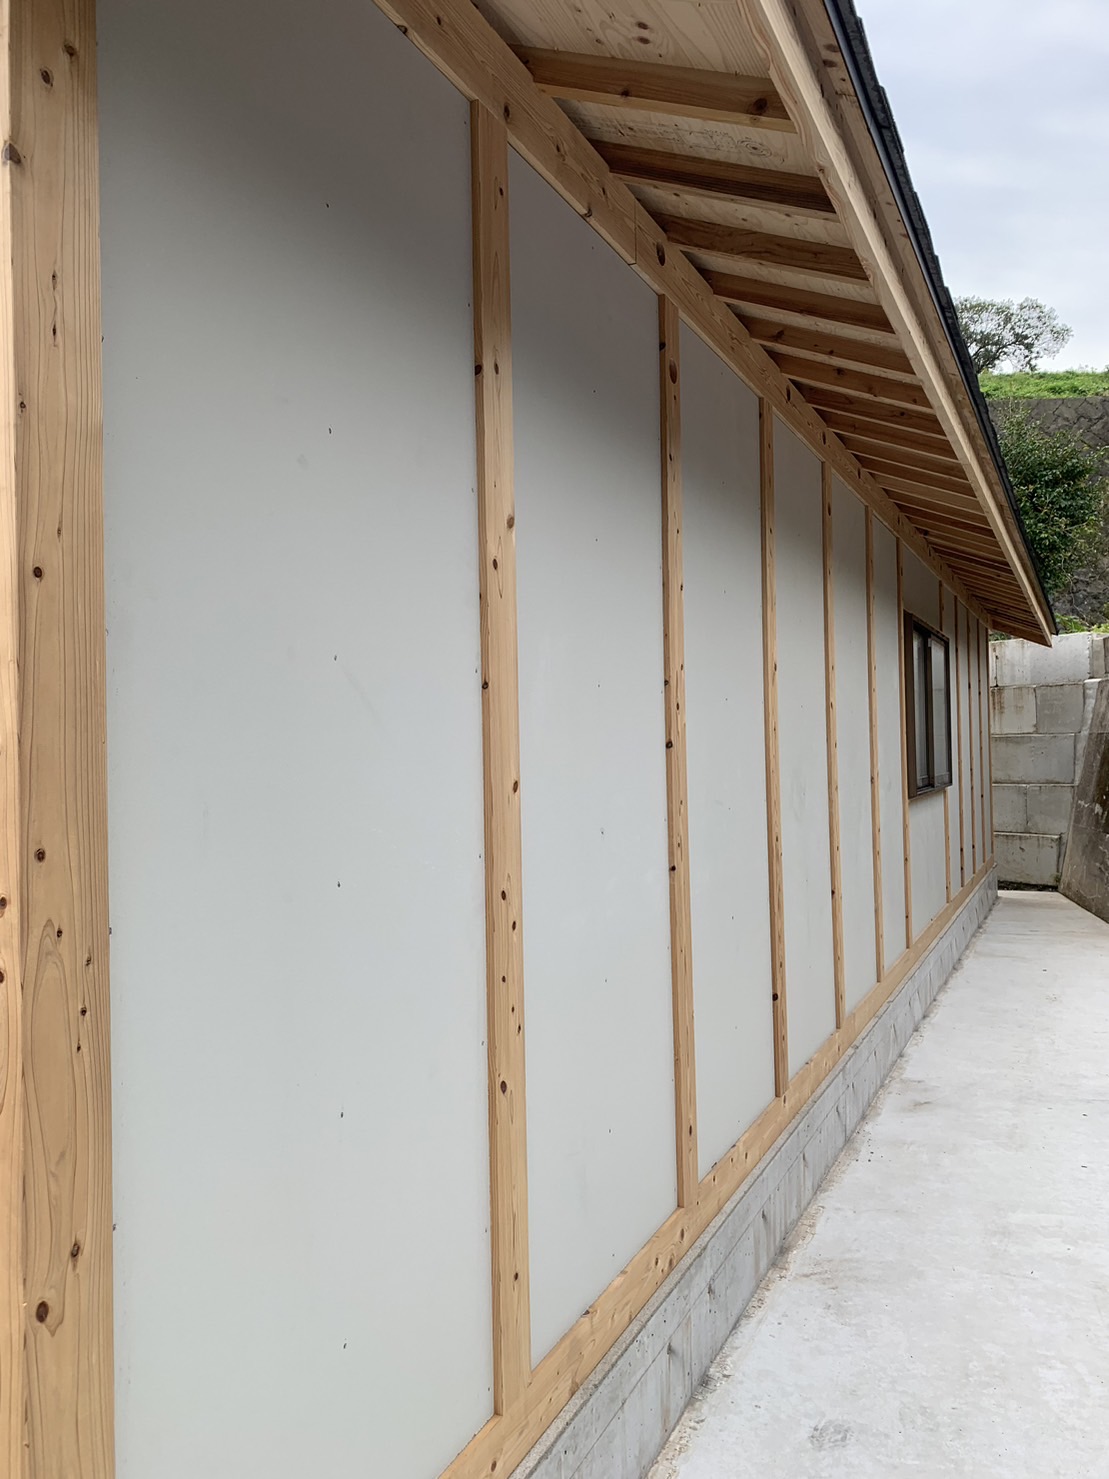 熊本市北区植木町で新設の農屋の外壁に10万円以内でコーキングと塗装をしてほしいとご連絡があり、現場調査したのち予算内で工事に入りました。